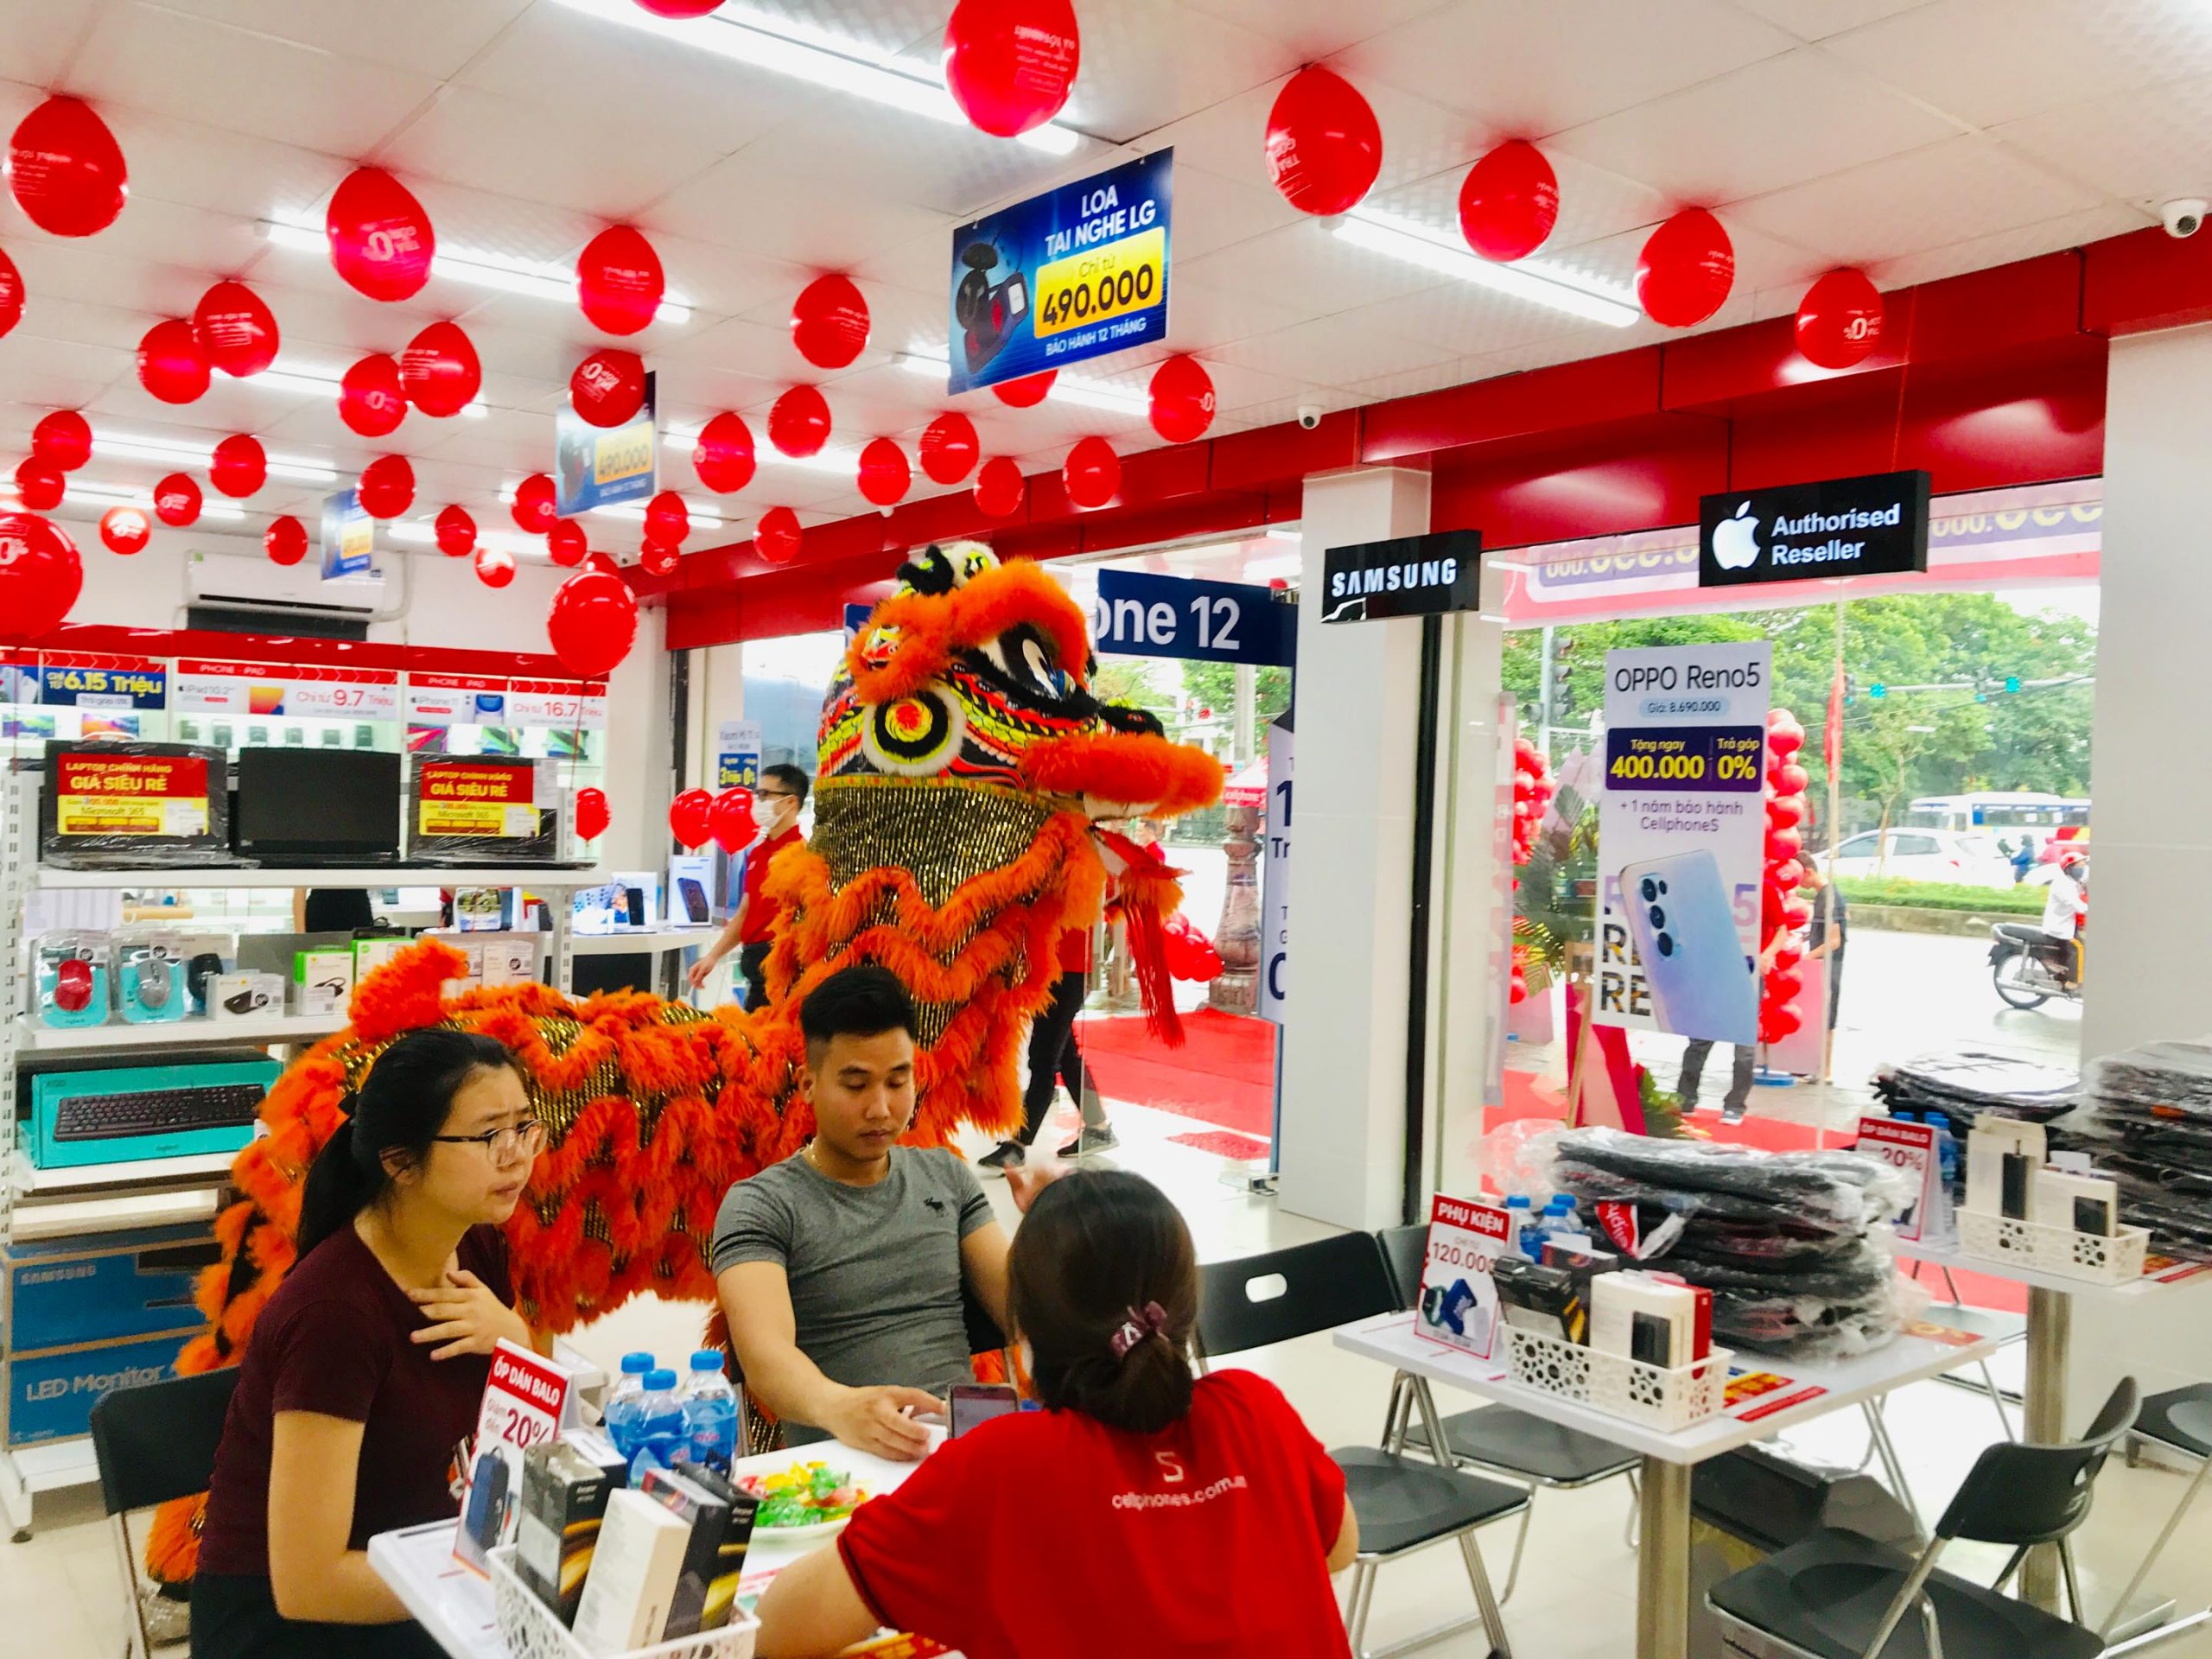 CellphoneS mở thêm cửa hàng mới tại thành phố Hải Dương, tiếp tục lộ trình mở rộng